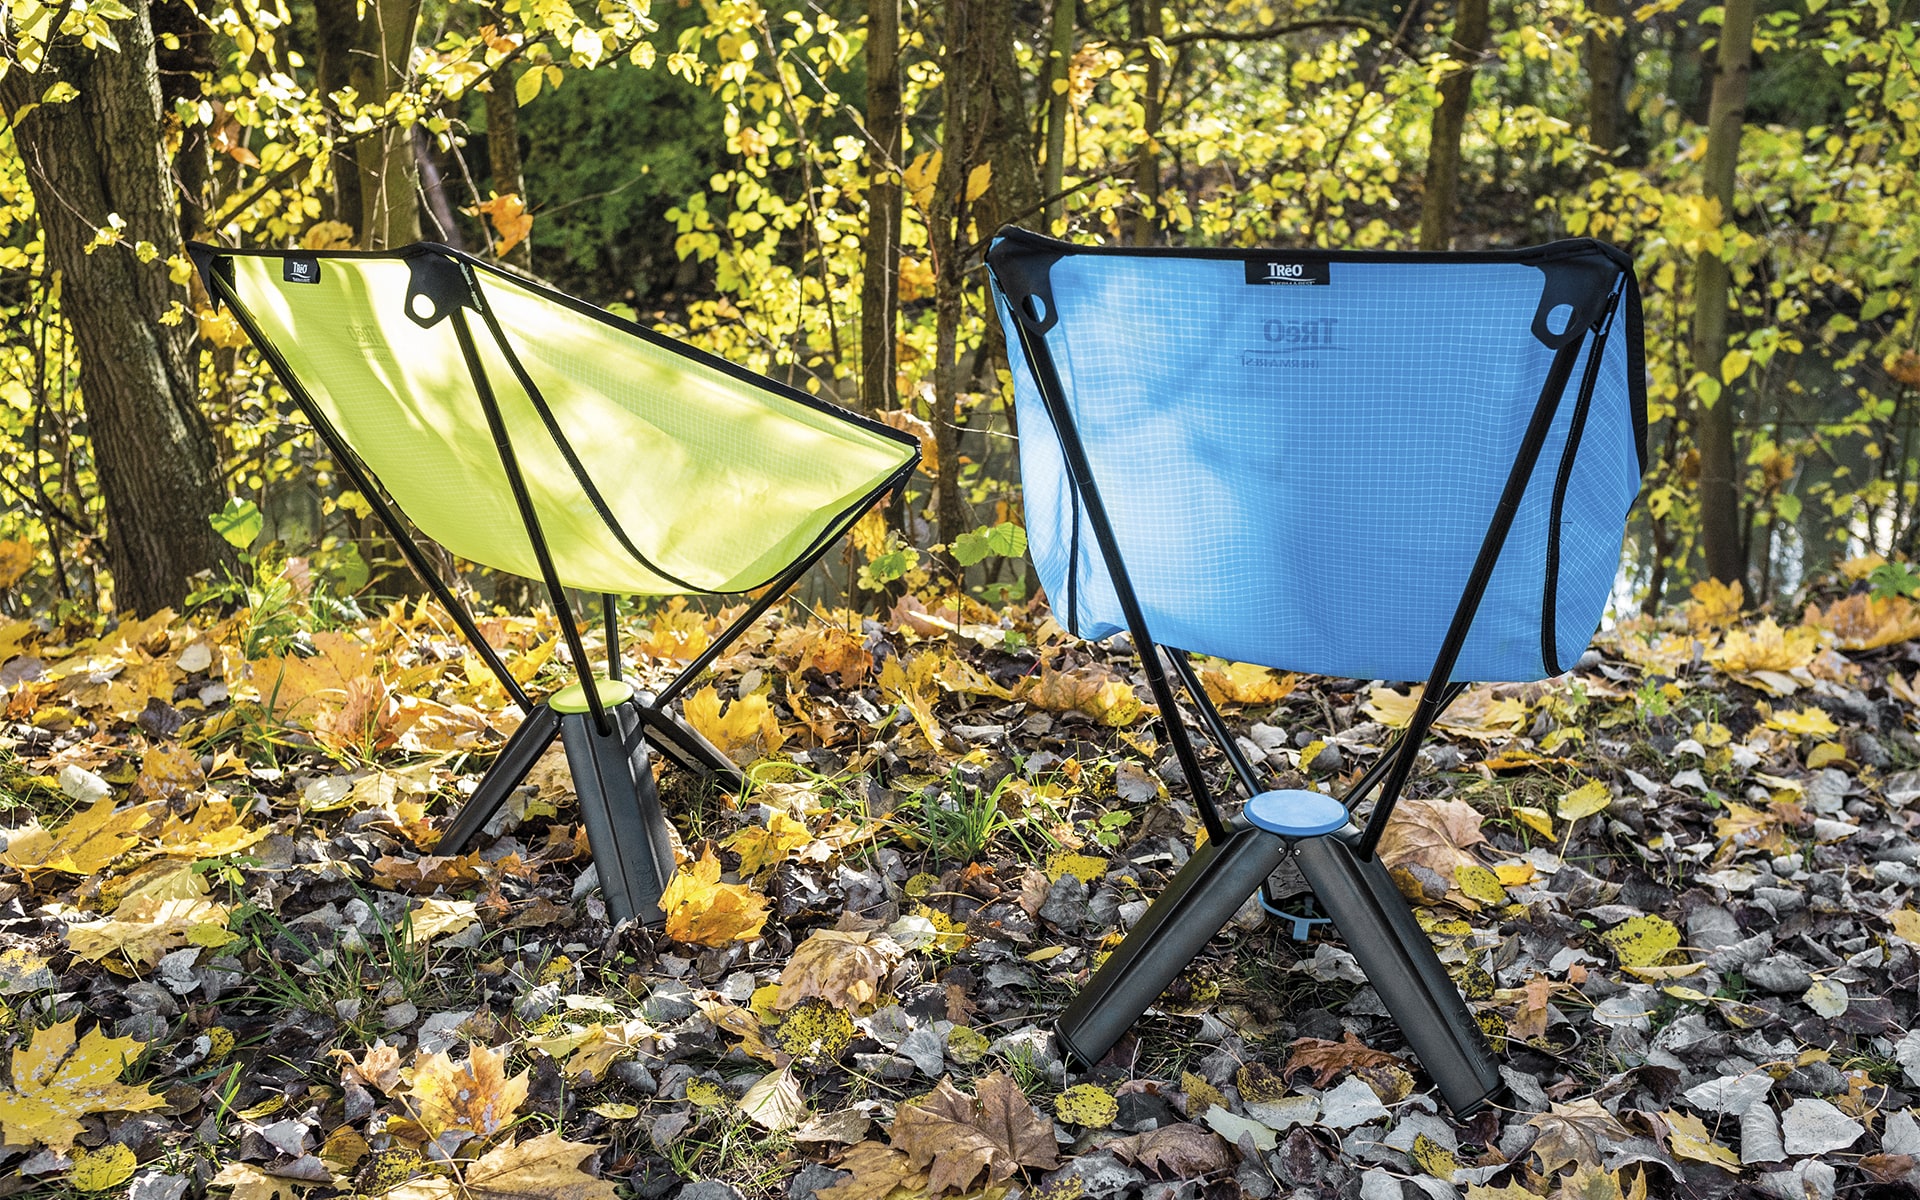 Klappbare Outdoor-Stühle Therm-a-Rest Treo von ITO Design in grün und blau auf herbstlichem Boden